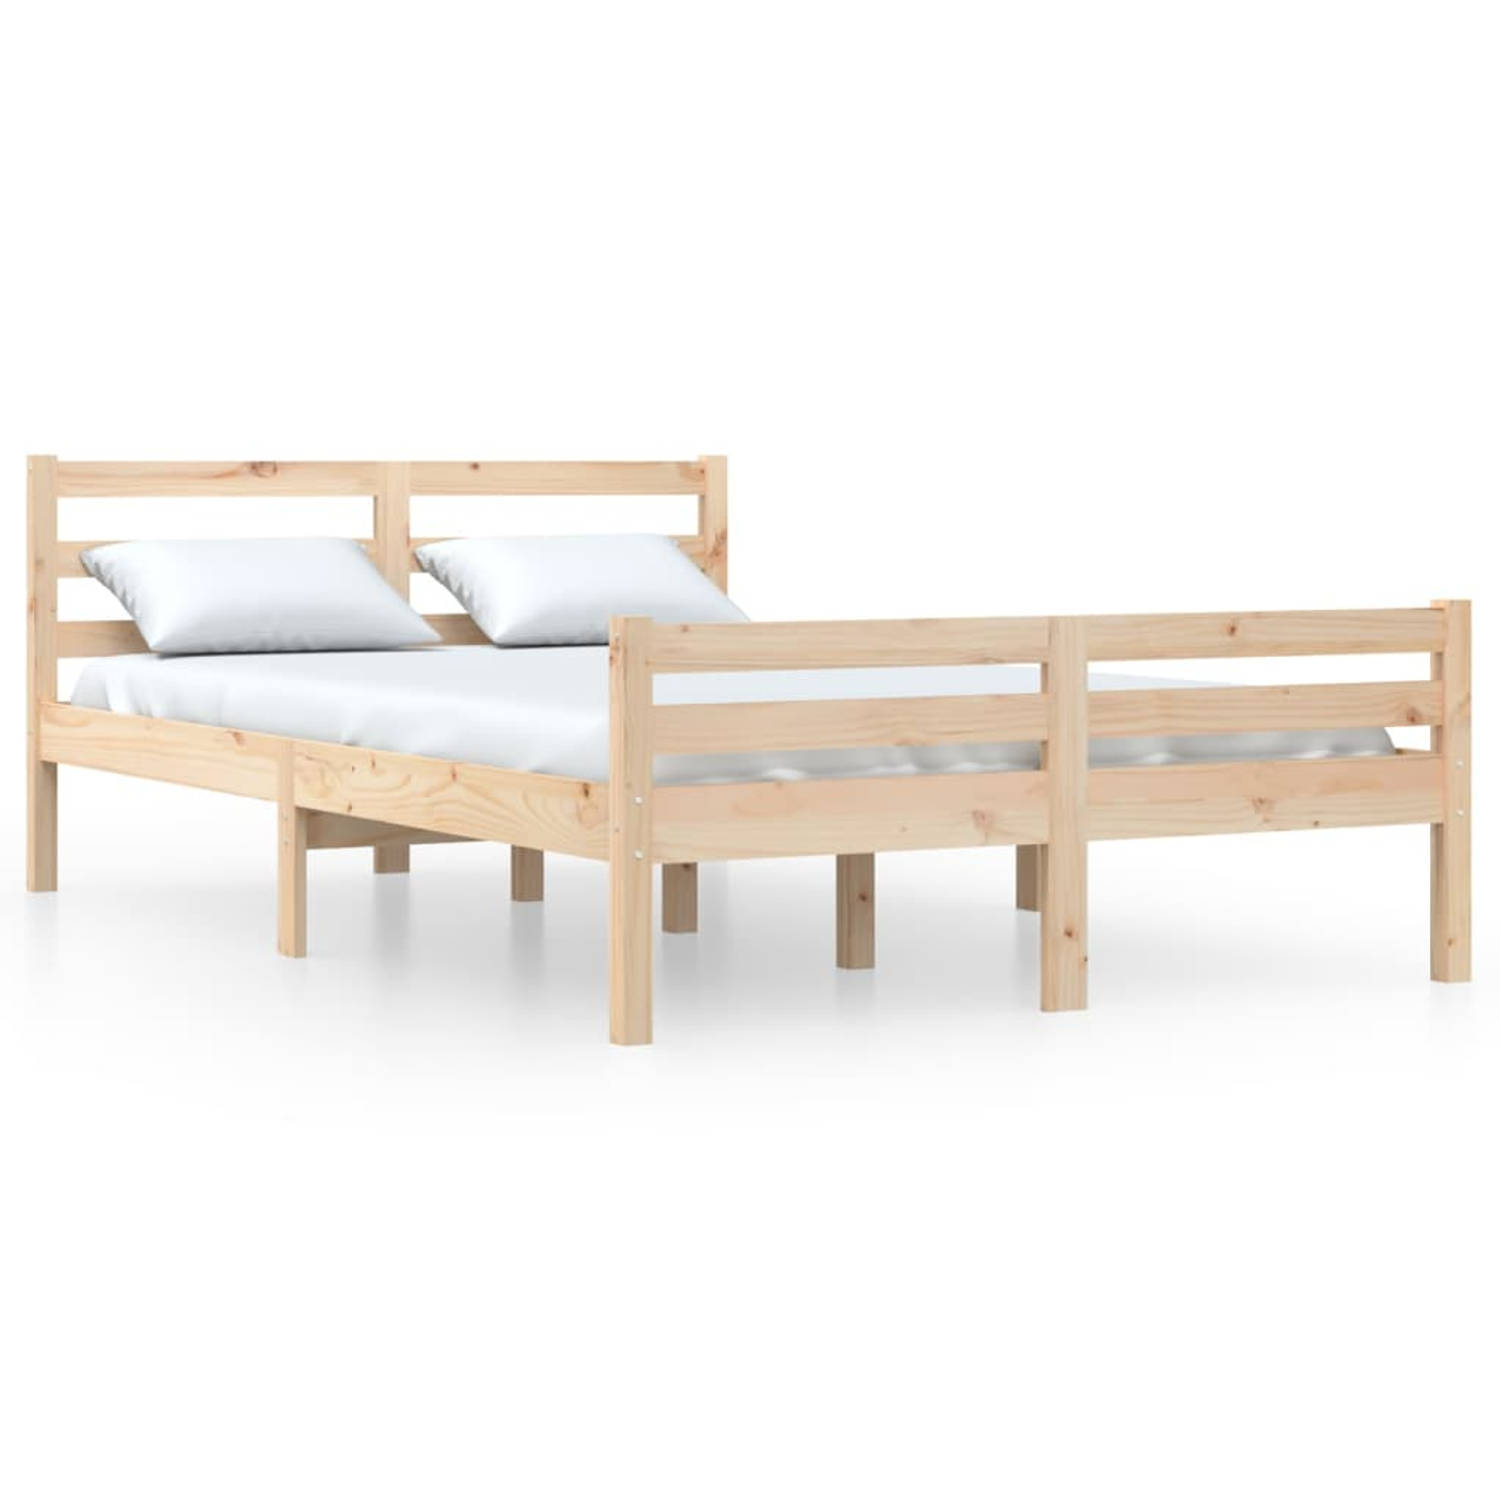 The Living Store Bedframe massief hout 140x190 cm - Bedframe - Bedframes - Bed - Bedbodem - Ledikant - Bed Frame - Massief Houten Bedframe - Slaapmeubel - Tweepersoonsbed - Bedden